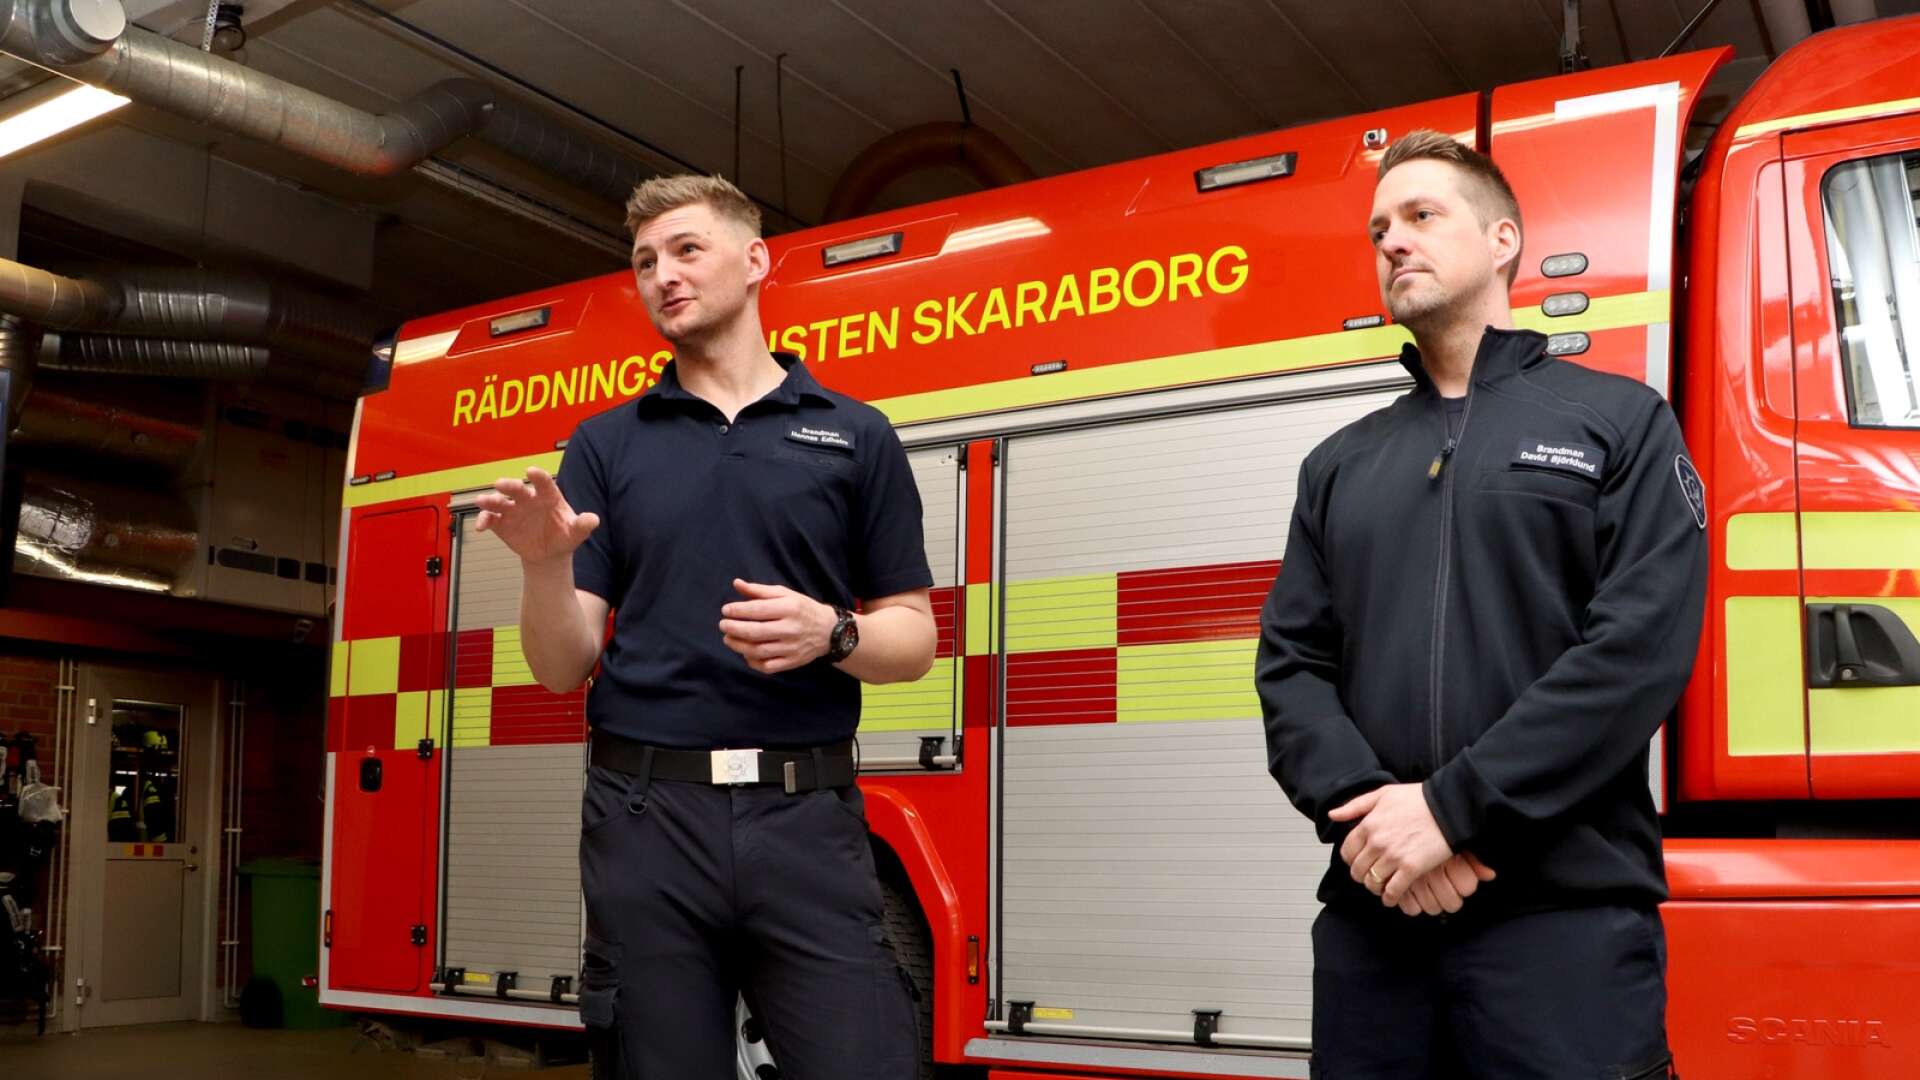 Hannes Edholm och David Björklund berättar att frustrationen är stor efter att Kommunal och SKR nått ett avtal. ”Vi är så besvikna och känner att Kommunal offrade oss brandmän”. 